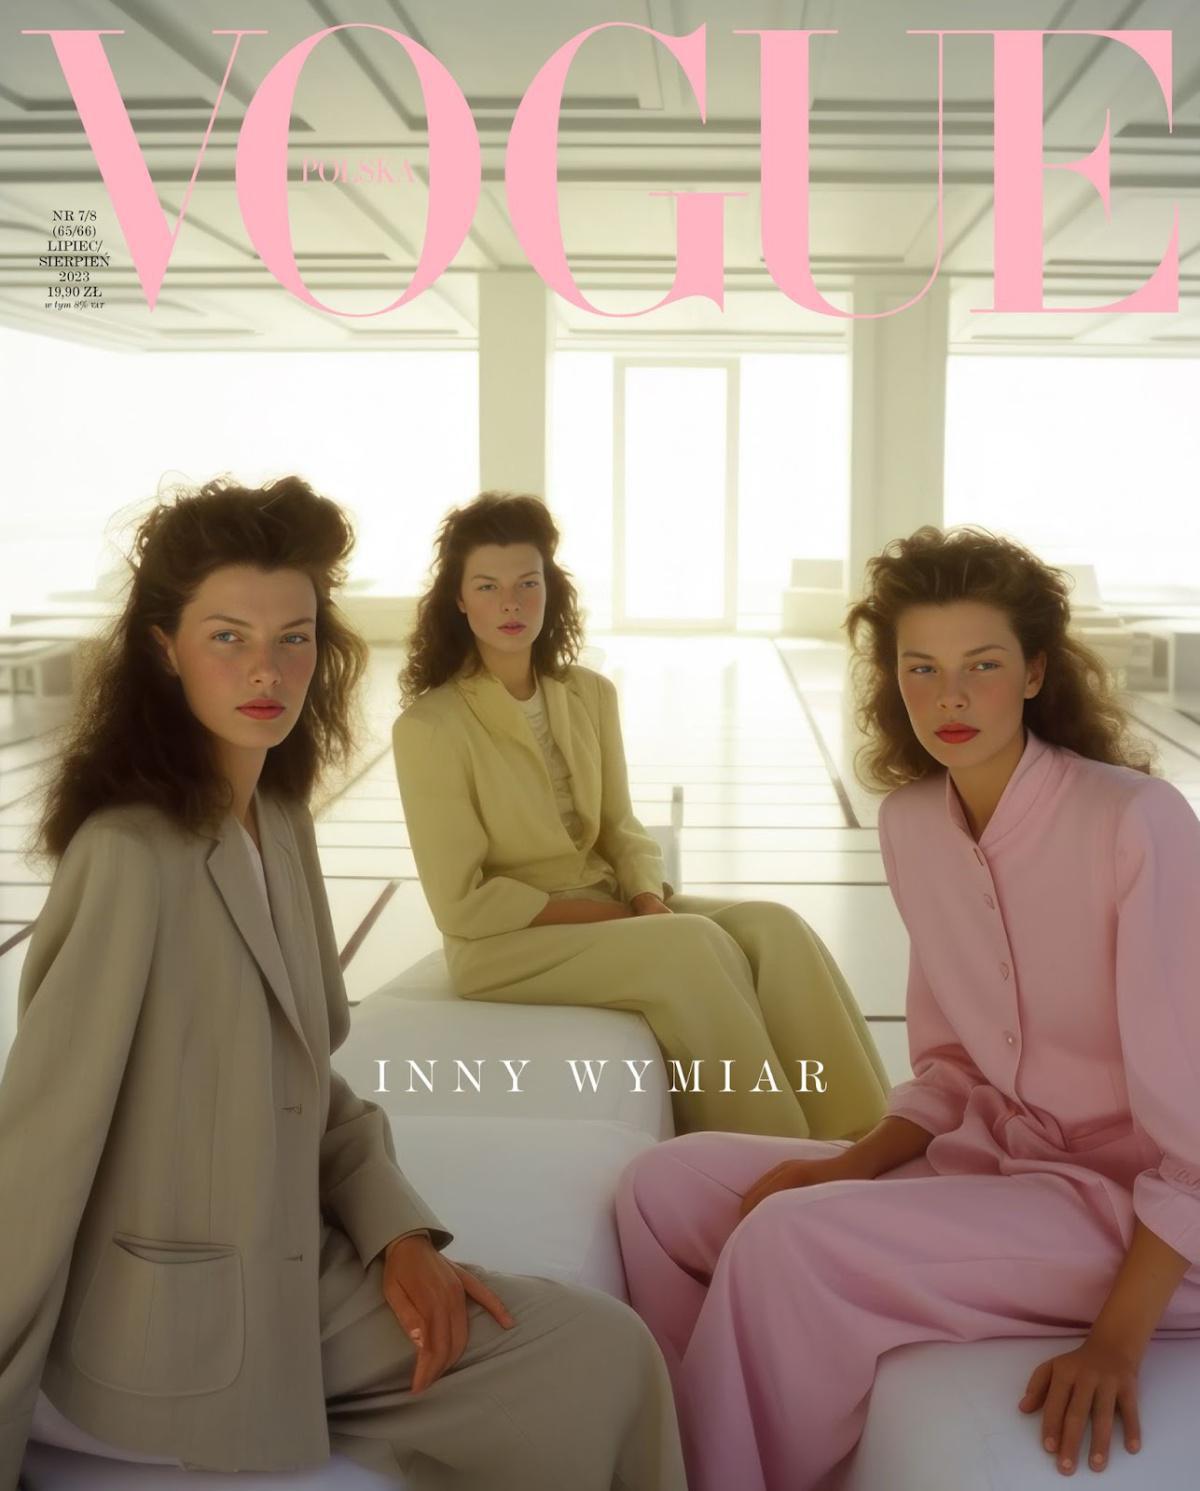 عن الخطوة الجريئة وراء غلاف مجلة Vogue Polska الذي تم إنشاؤه بواسطة الذكاء الاصطناعي